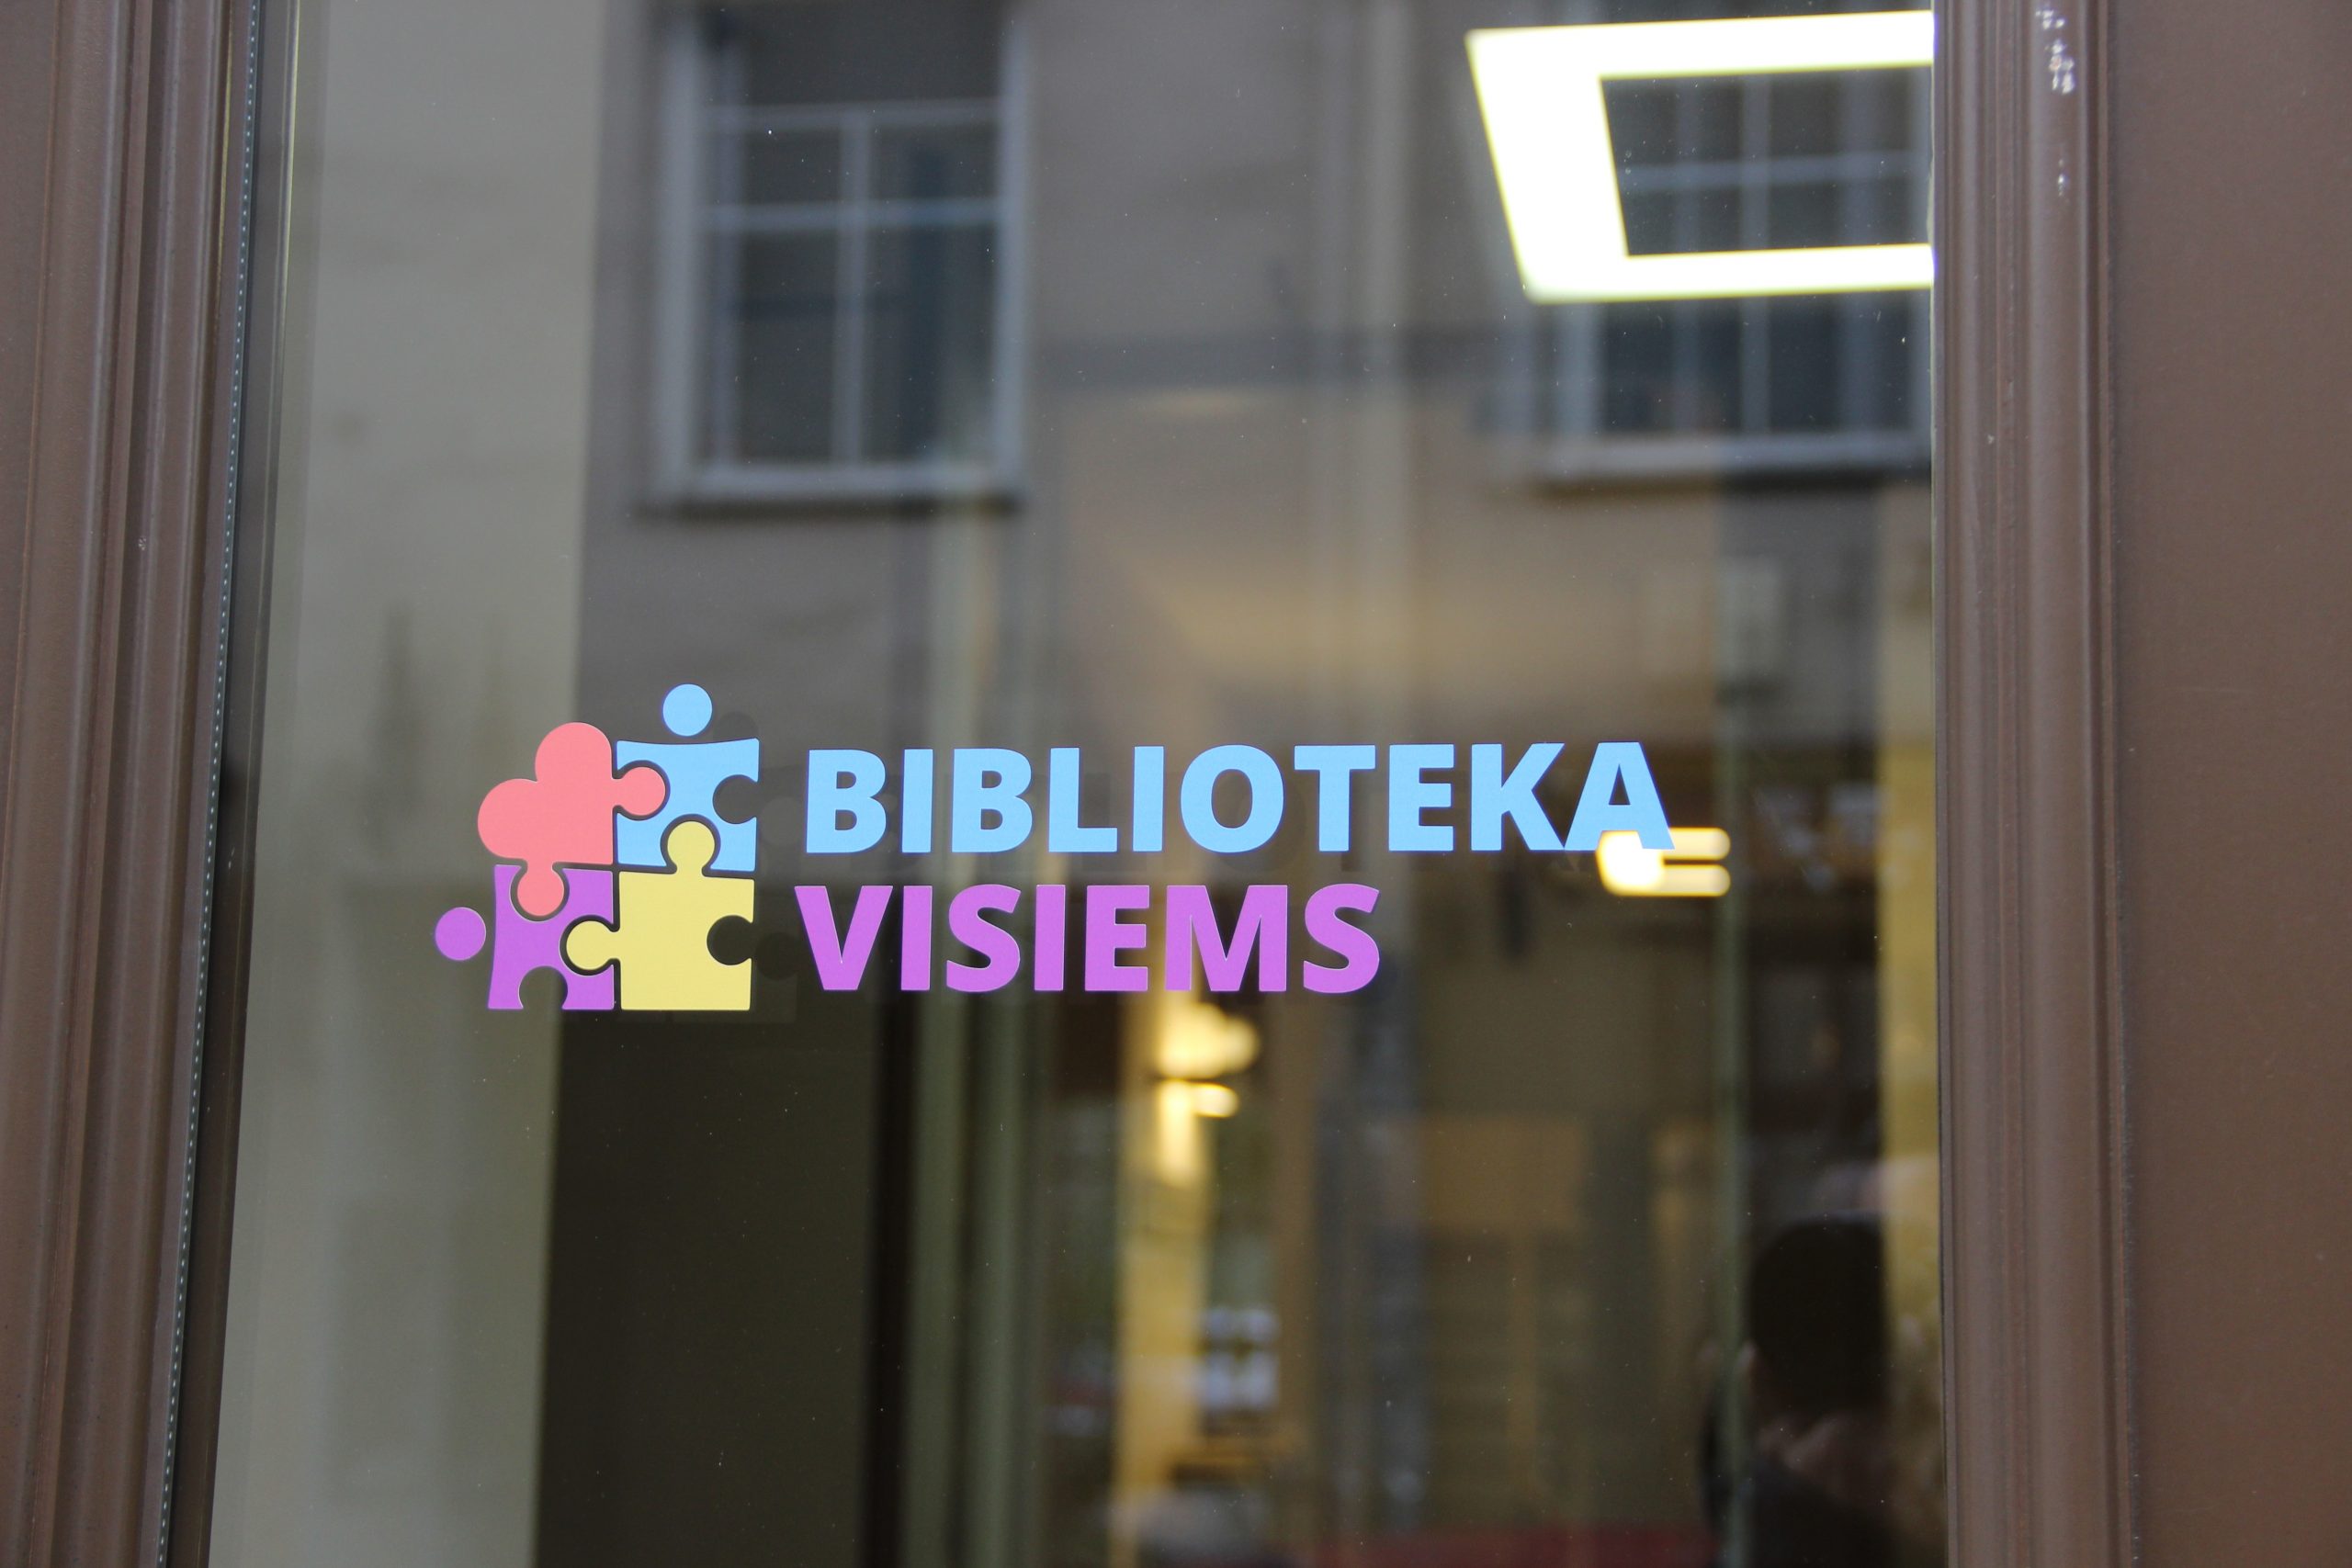 Biblioteka visiems logotipas ant lango